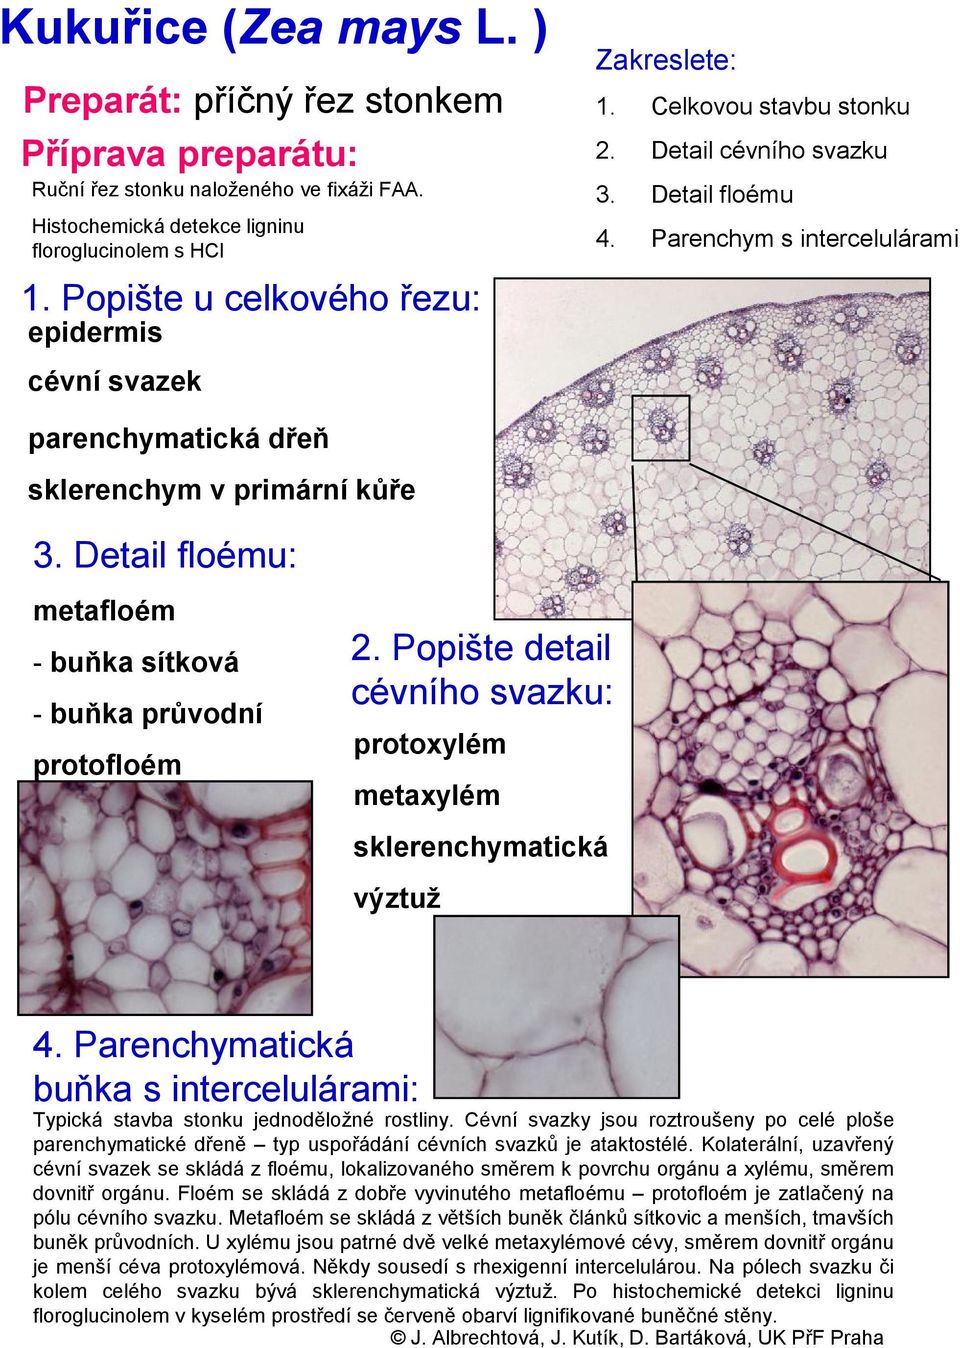 Parenchymatická buňka s intercelulárami: Typická stavba stonku jednoděložné rostliny. Cévní svazky jsou roztroušeny po celé ploše parenchymatické dřeně typ uspořádání cévních svazků je ataktostélé.